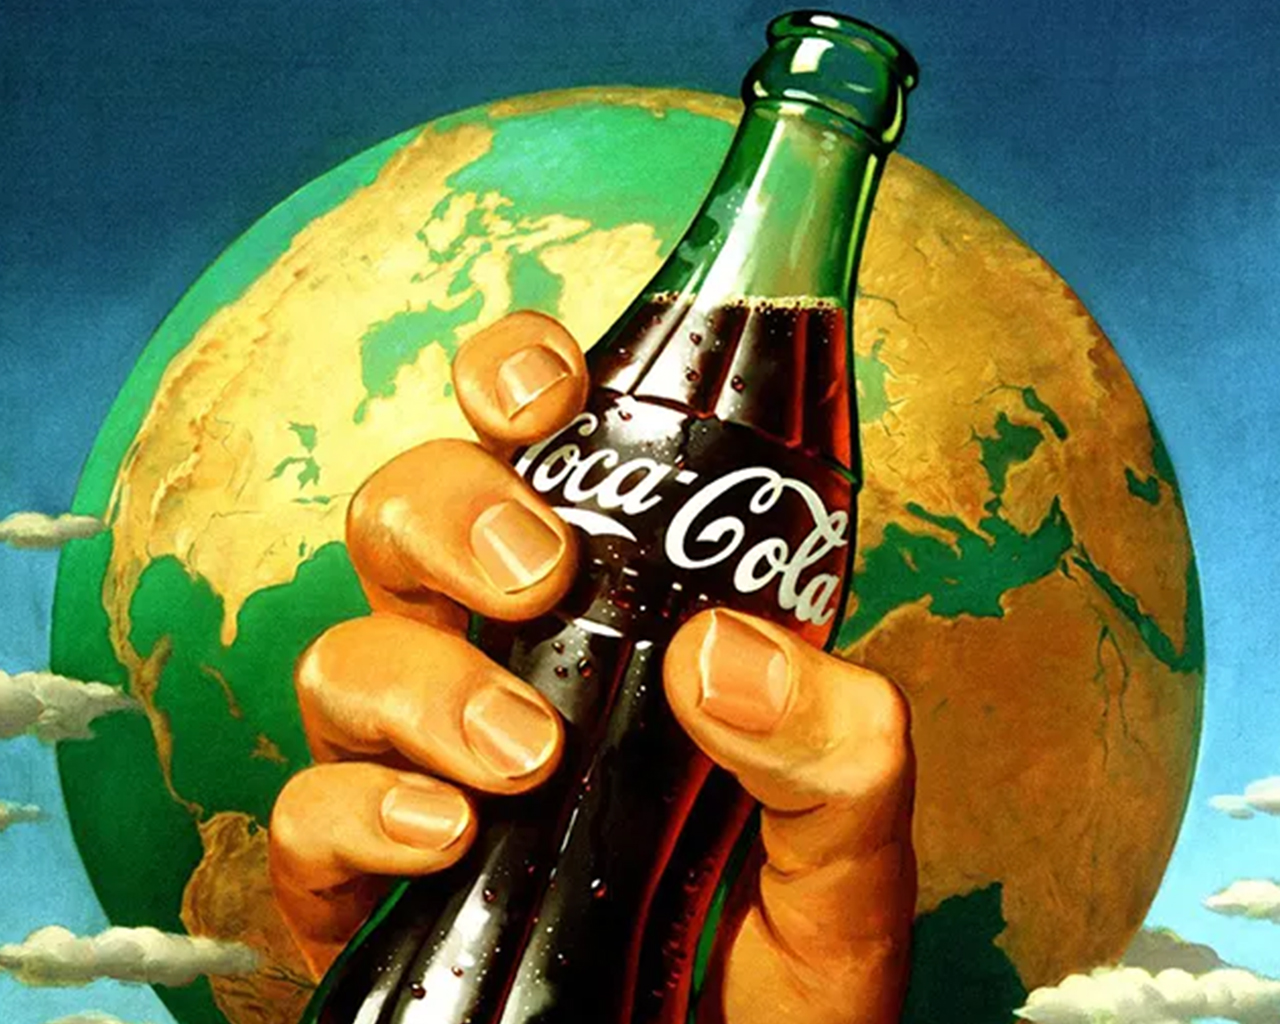 Վինտաժային գունագեղ նկարազարդում ձեռքը, որը բռնում է Կոկա-Կոլայի շիշը երկրային գլոբուսի առջև